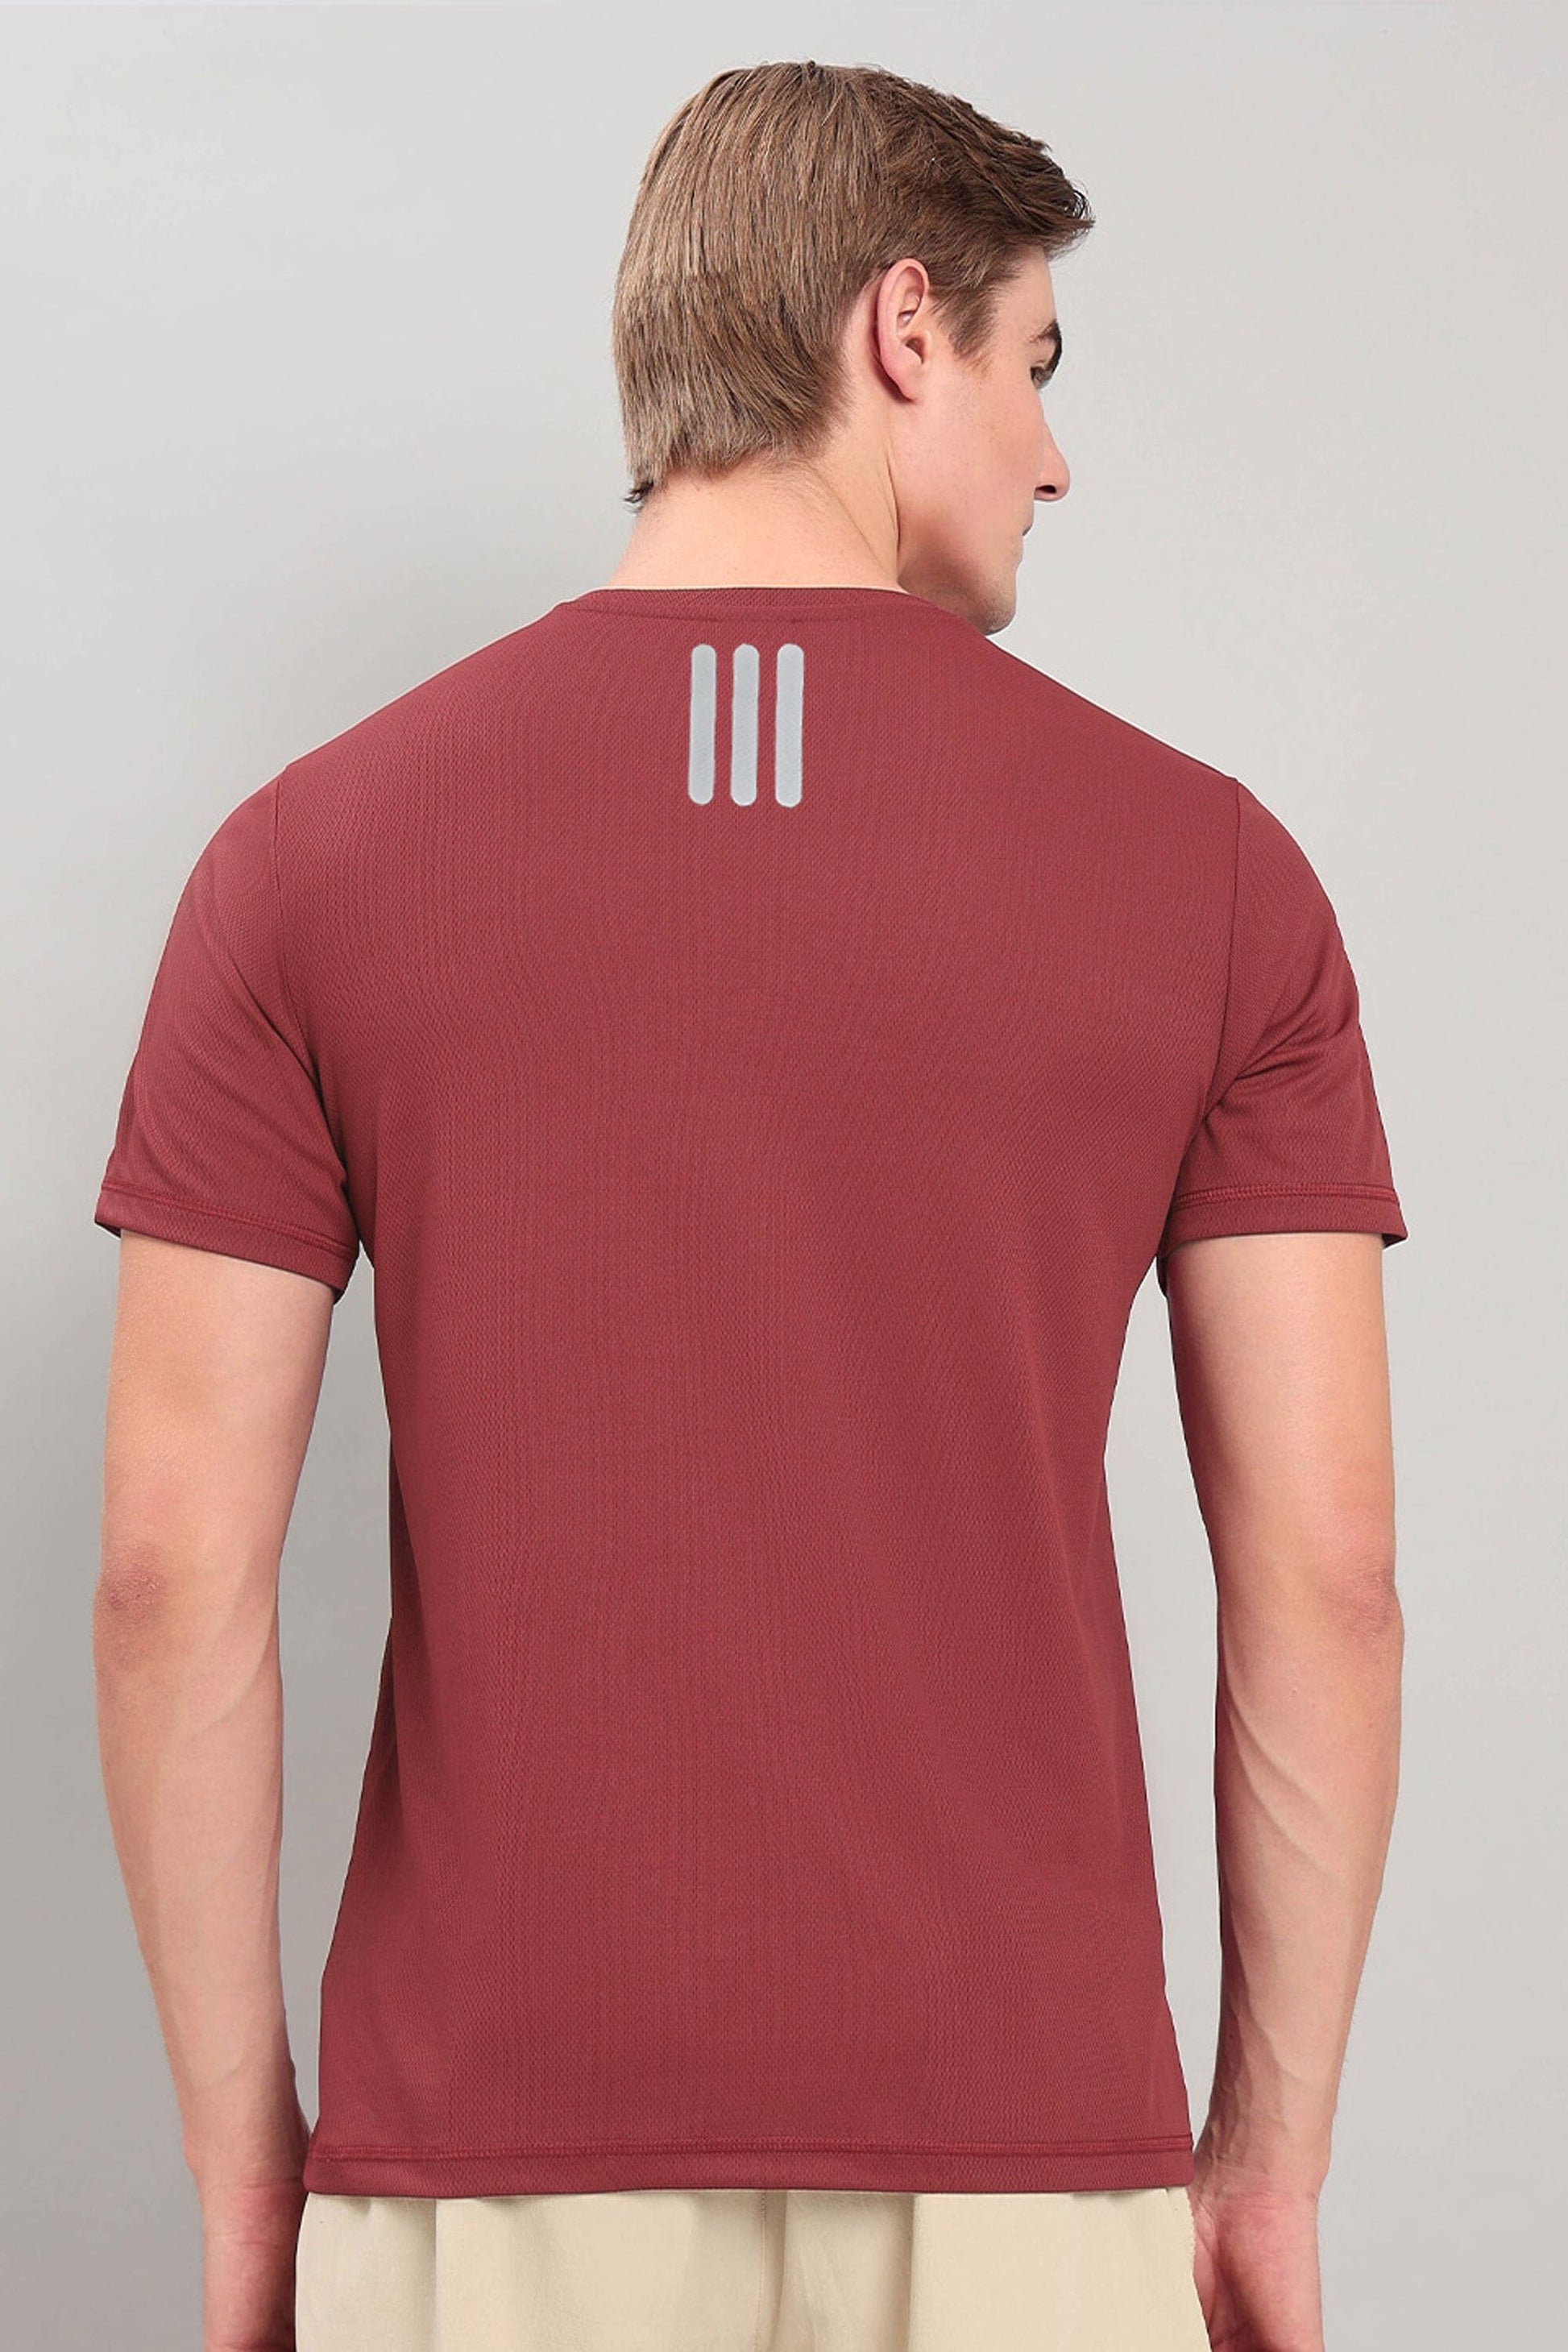 Men's Rhodes Design Activewear Crew Neck Minor Fault Tee Shirt